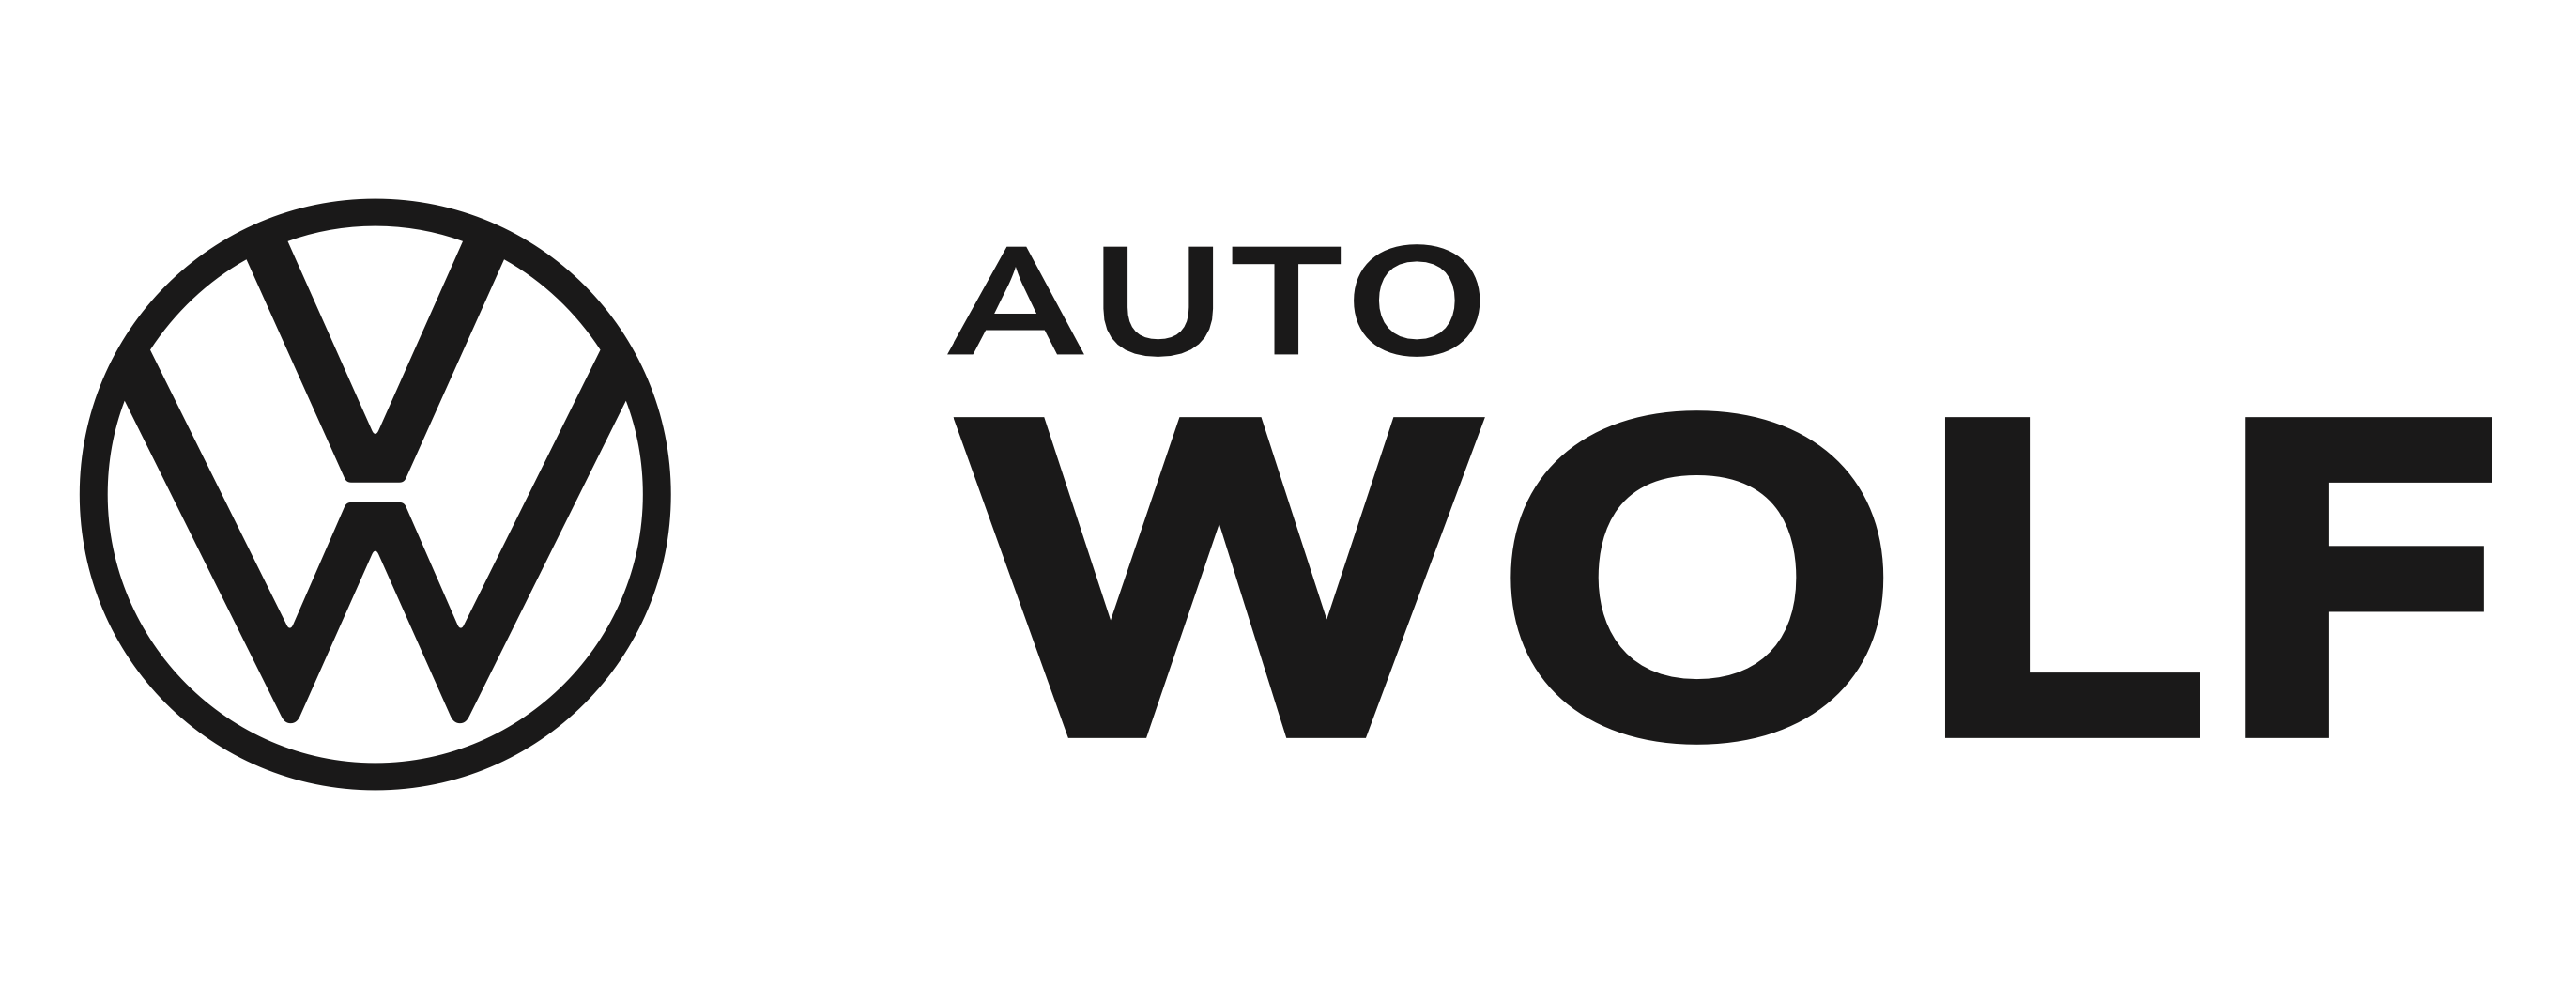 AutoWolf_VW